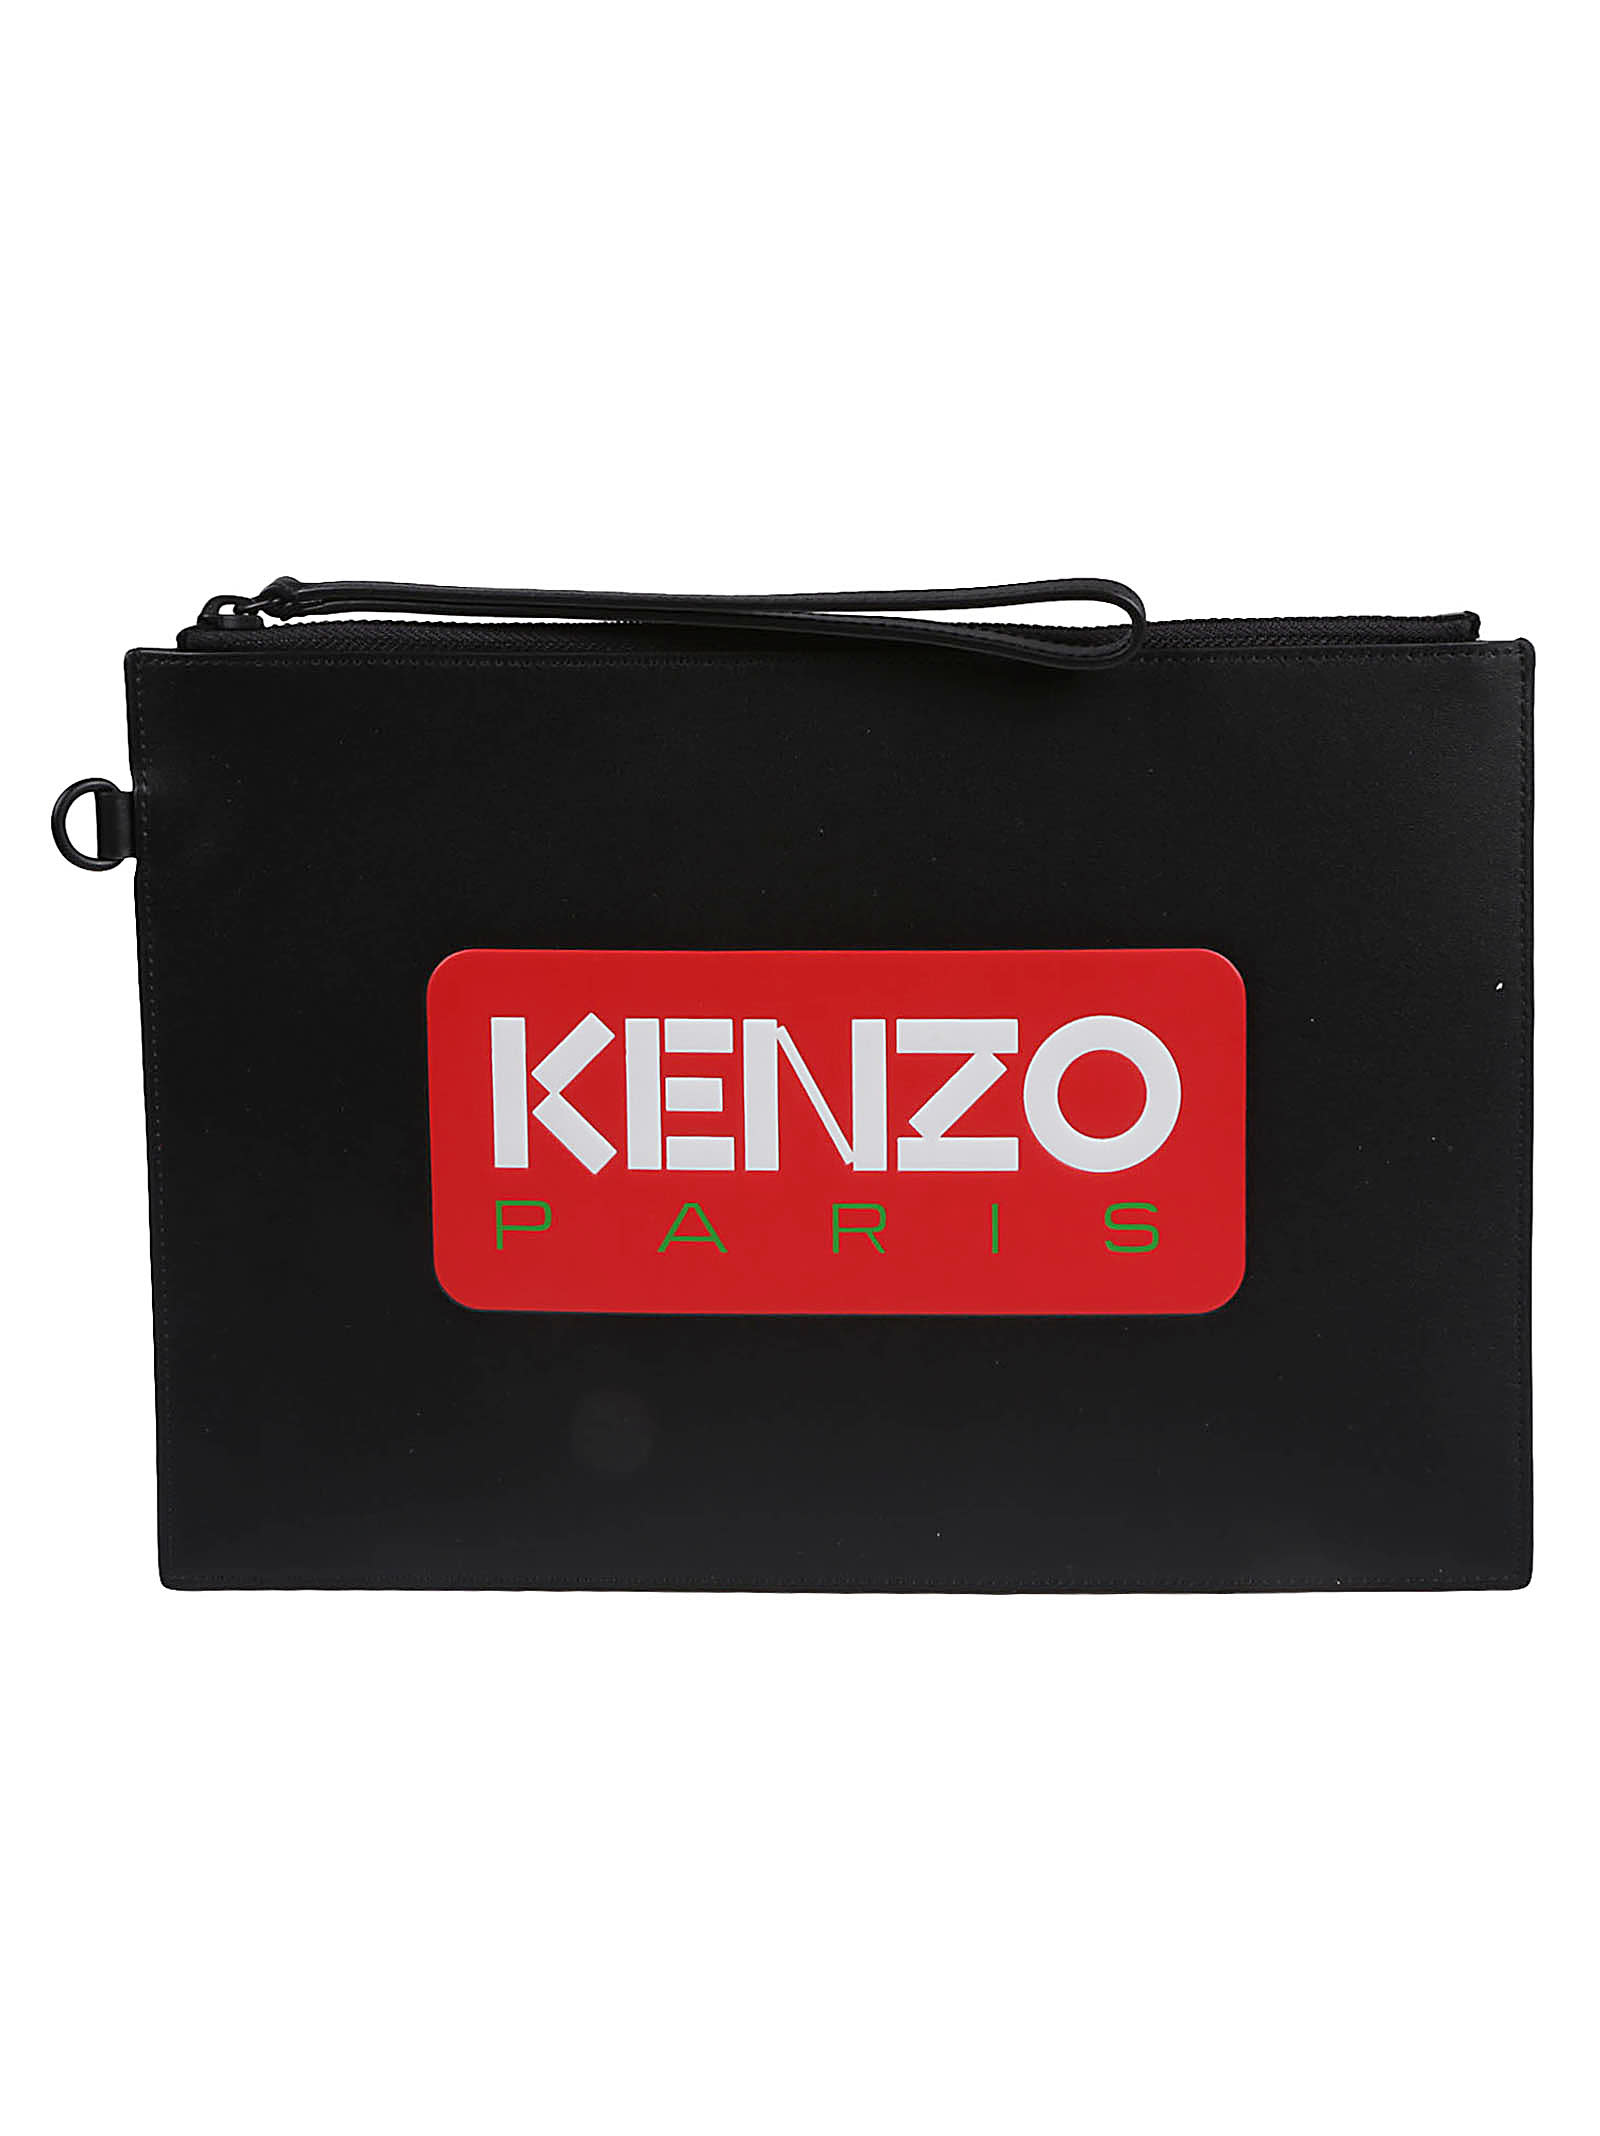 Kenzo Large Clutch In Noir